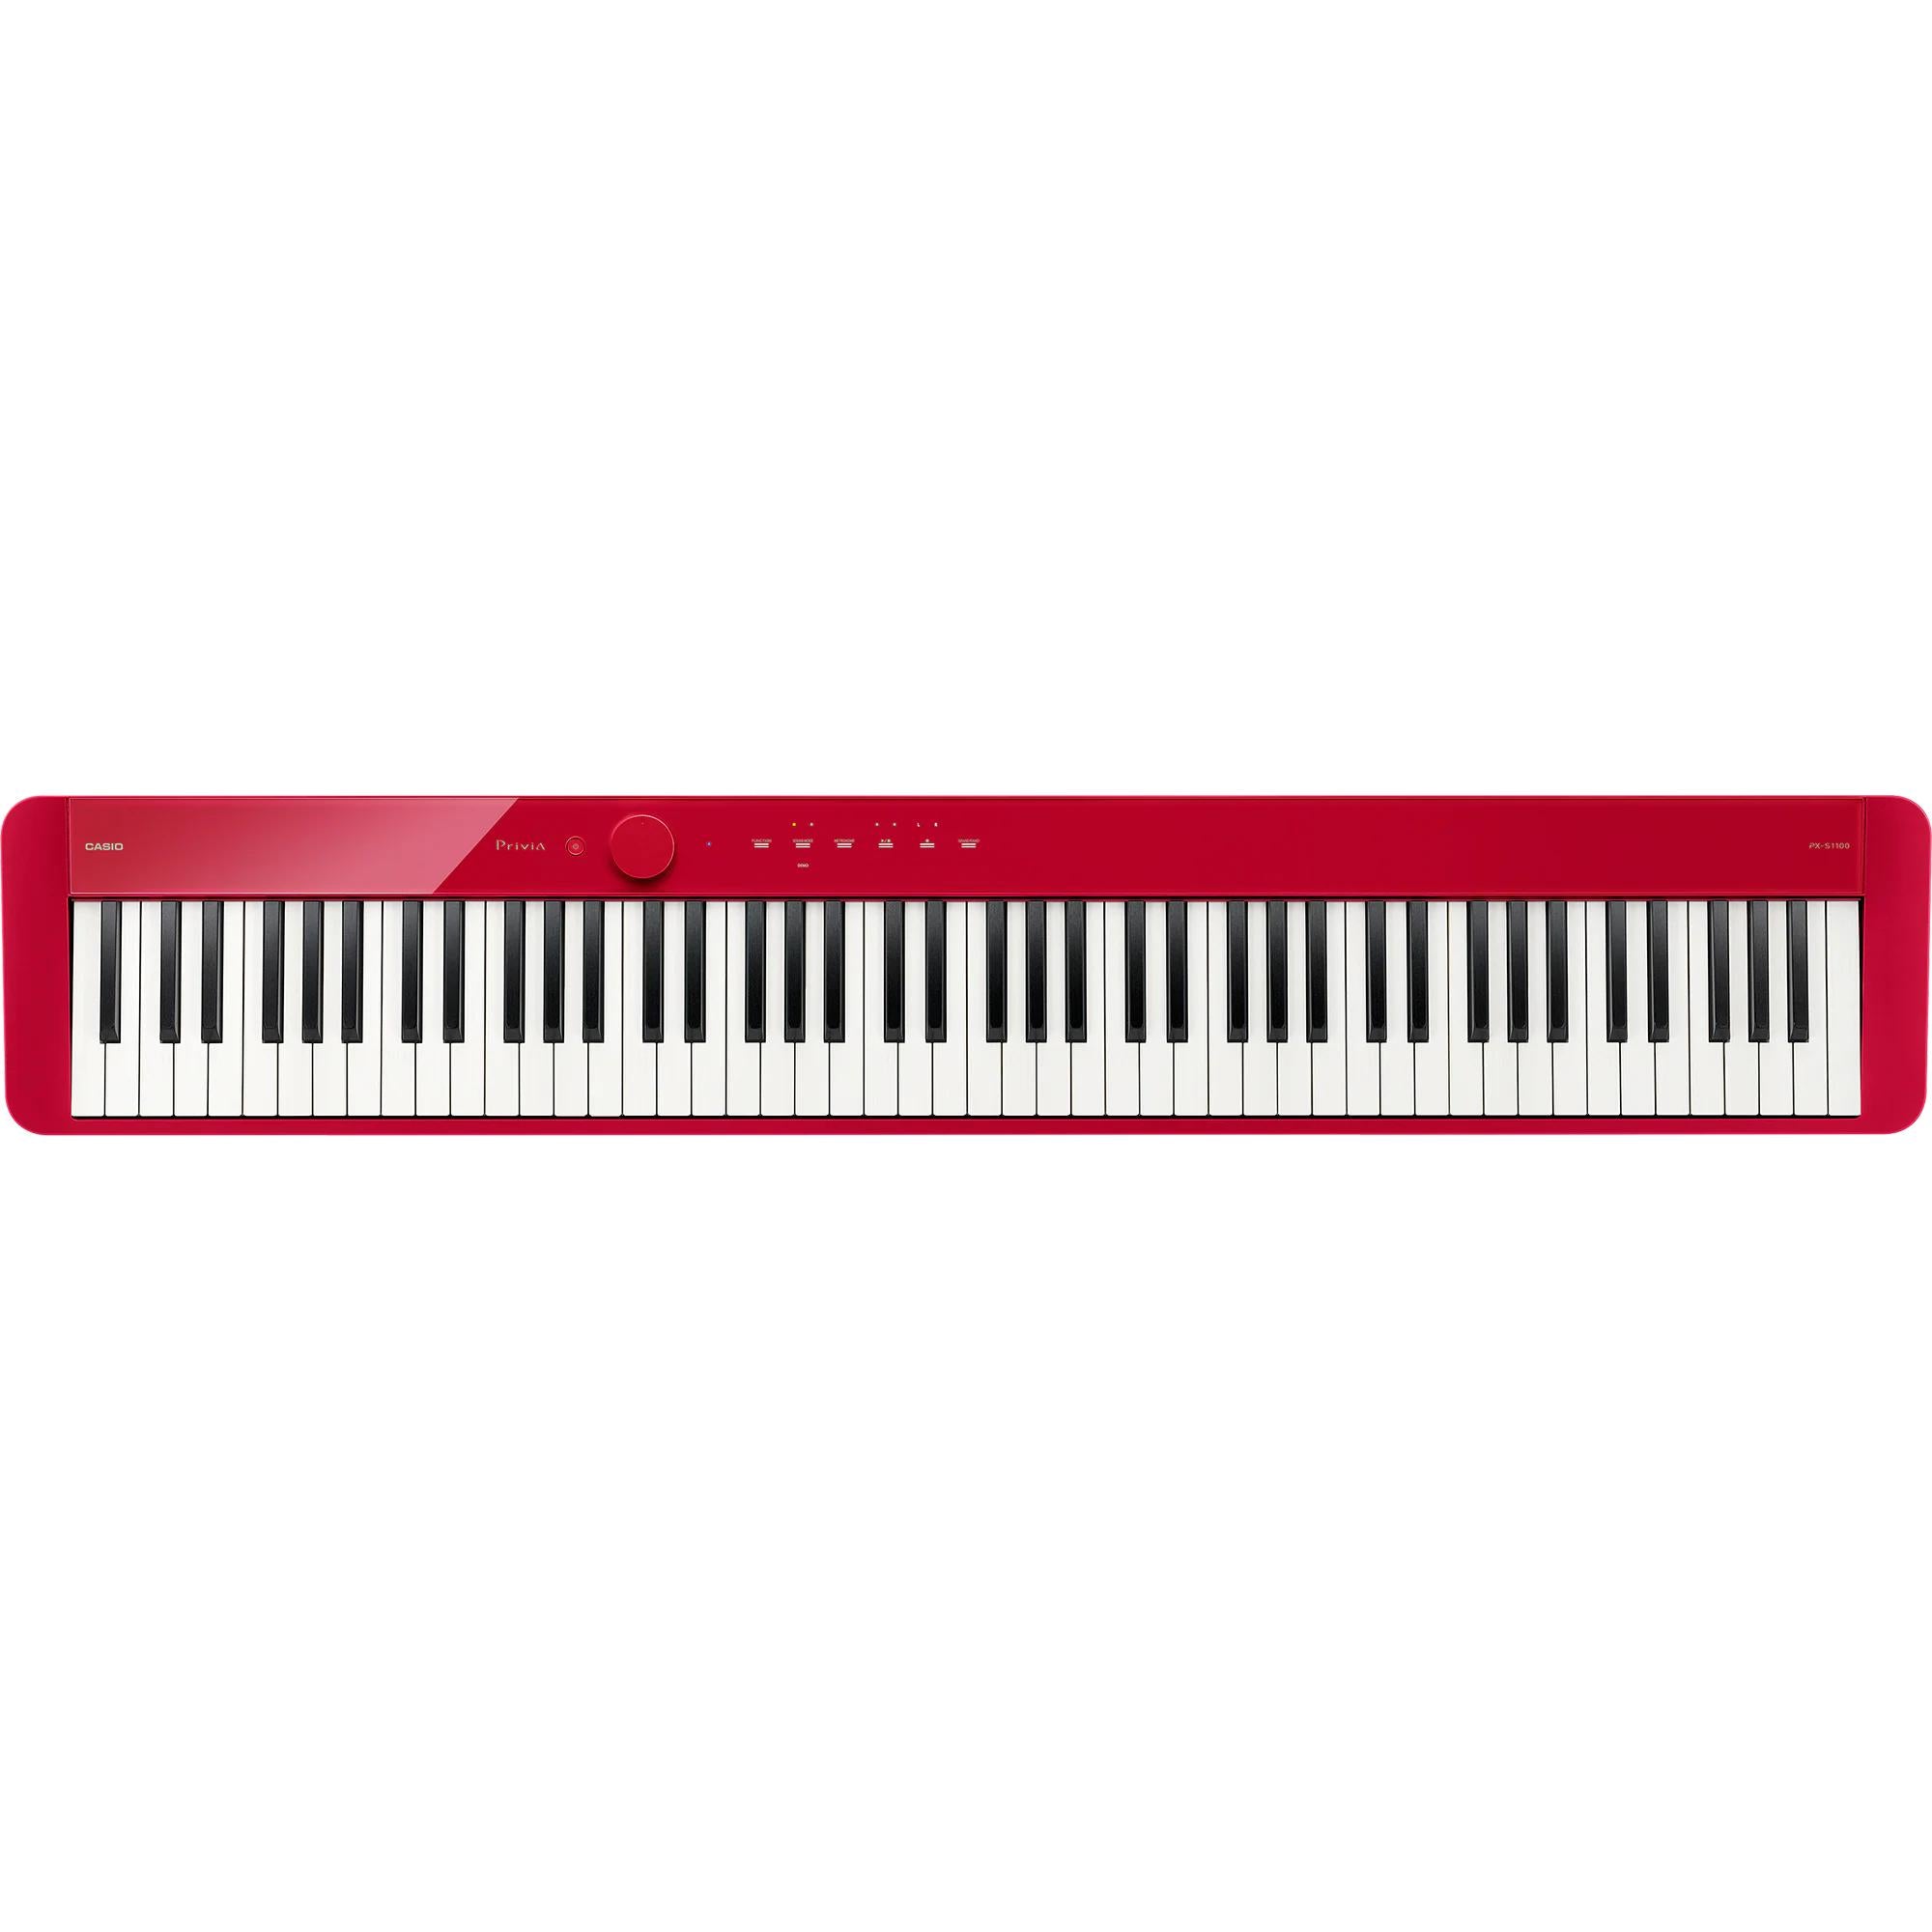 Đàn Piano Điện Casio PX-S1100